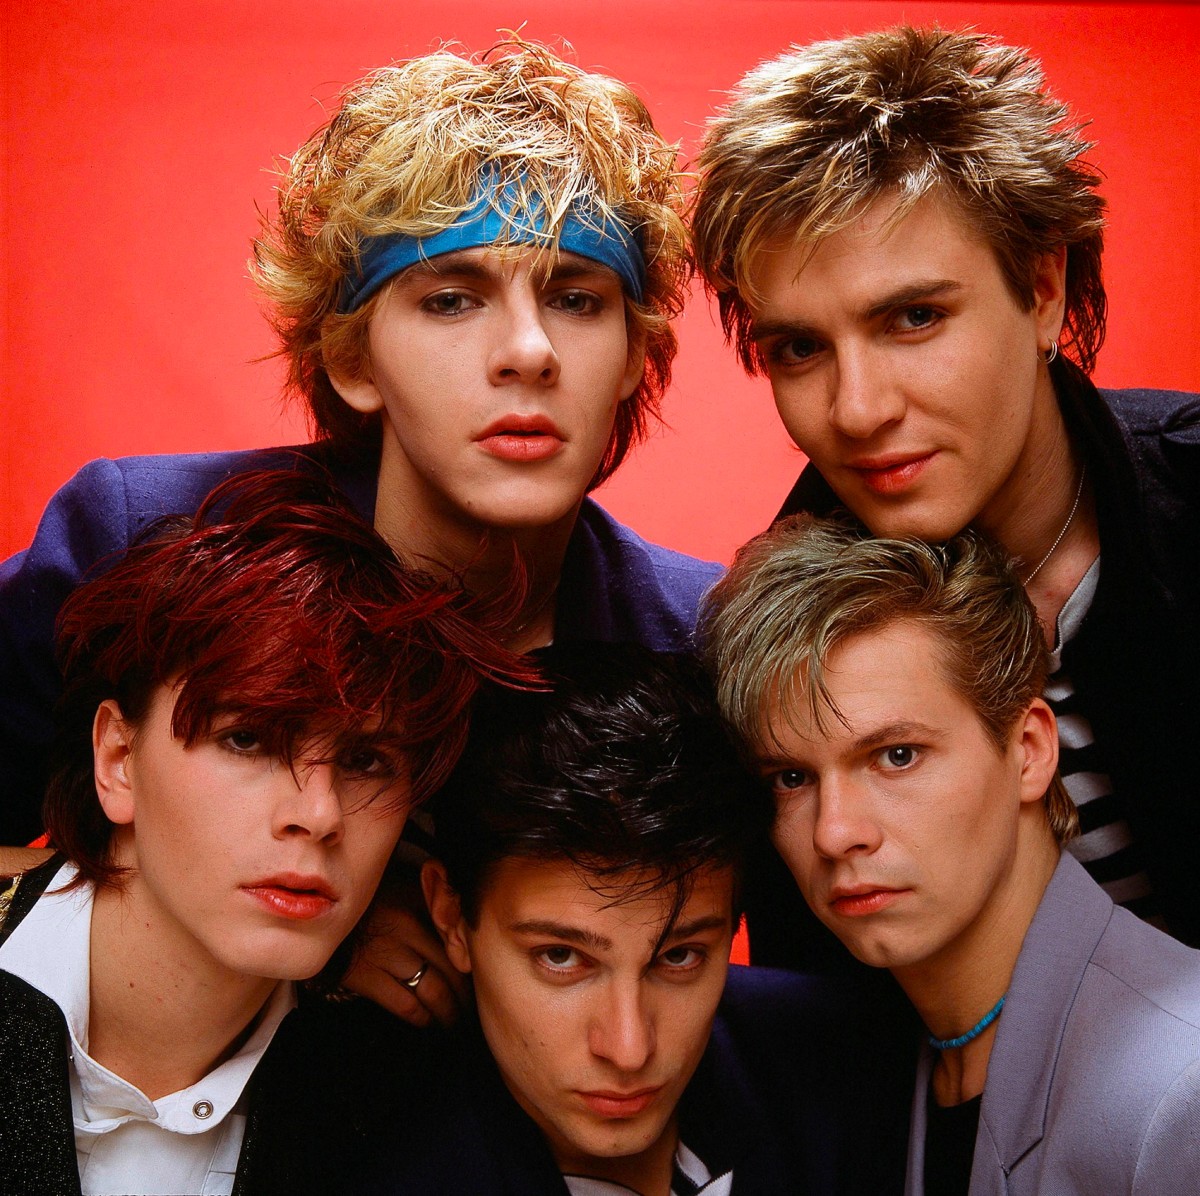 Группа «Duran Duran» («Дюран Дюран») на фотосессии